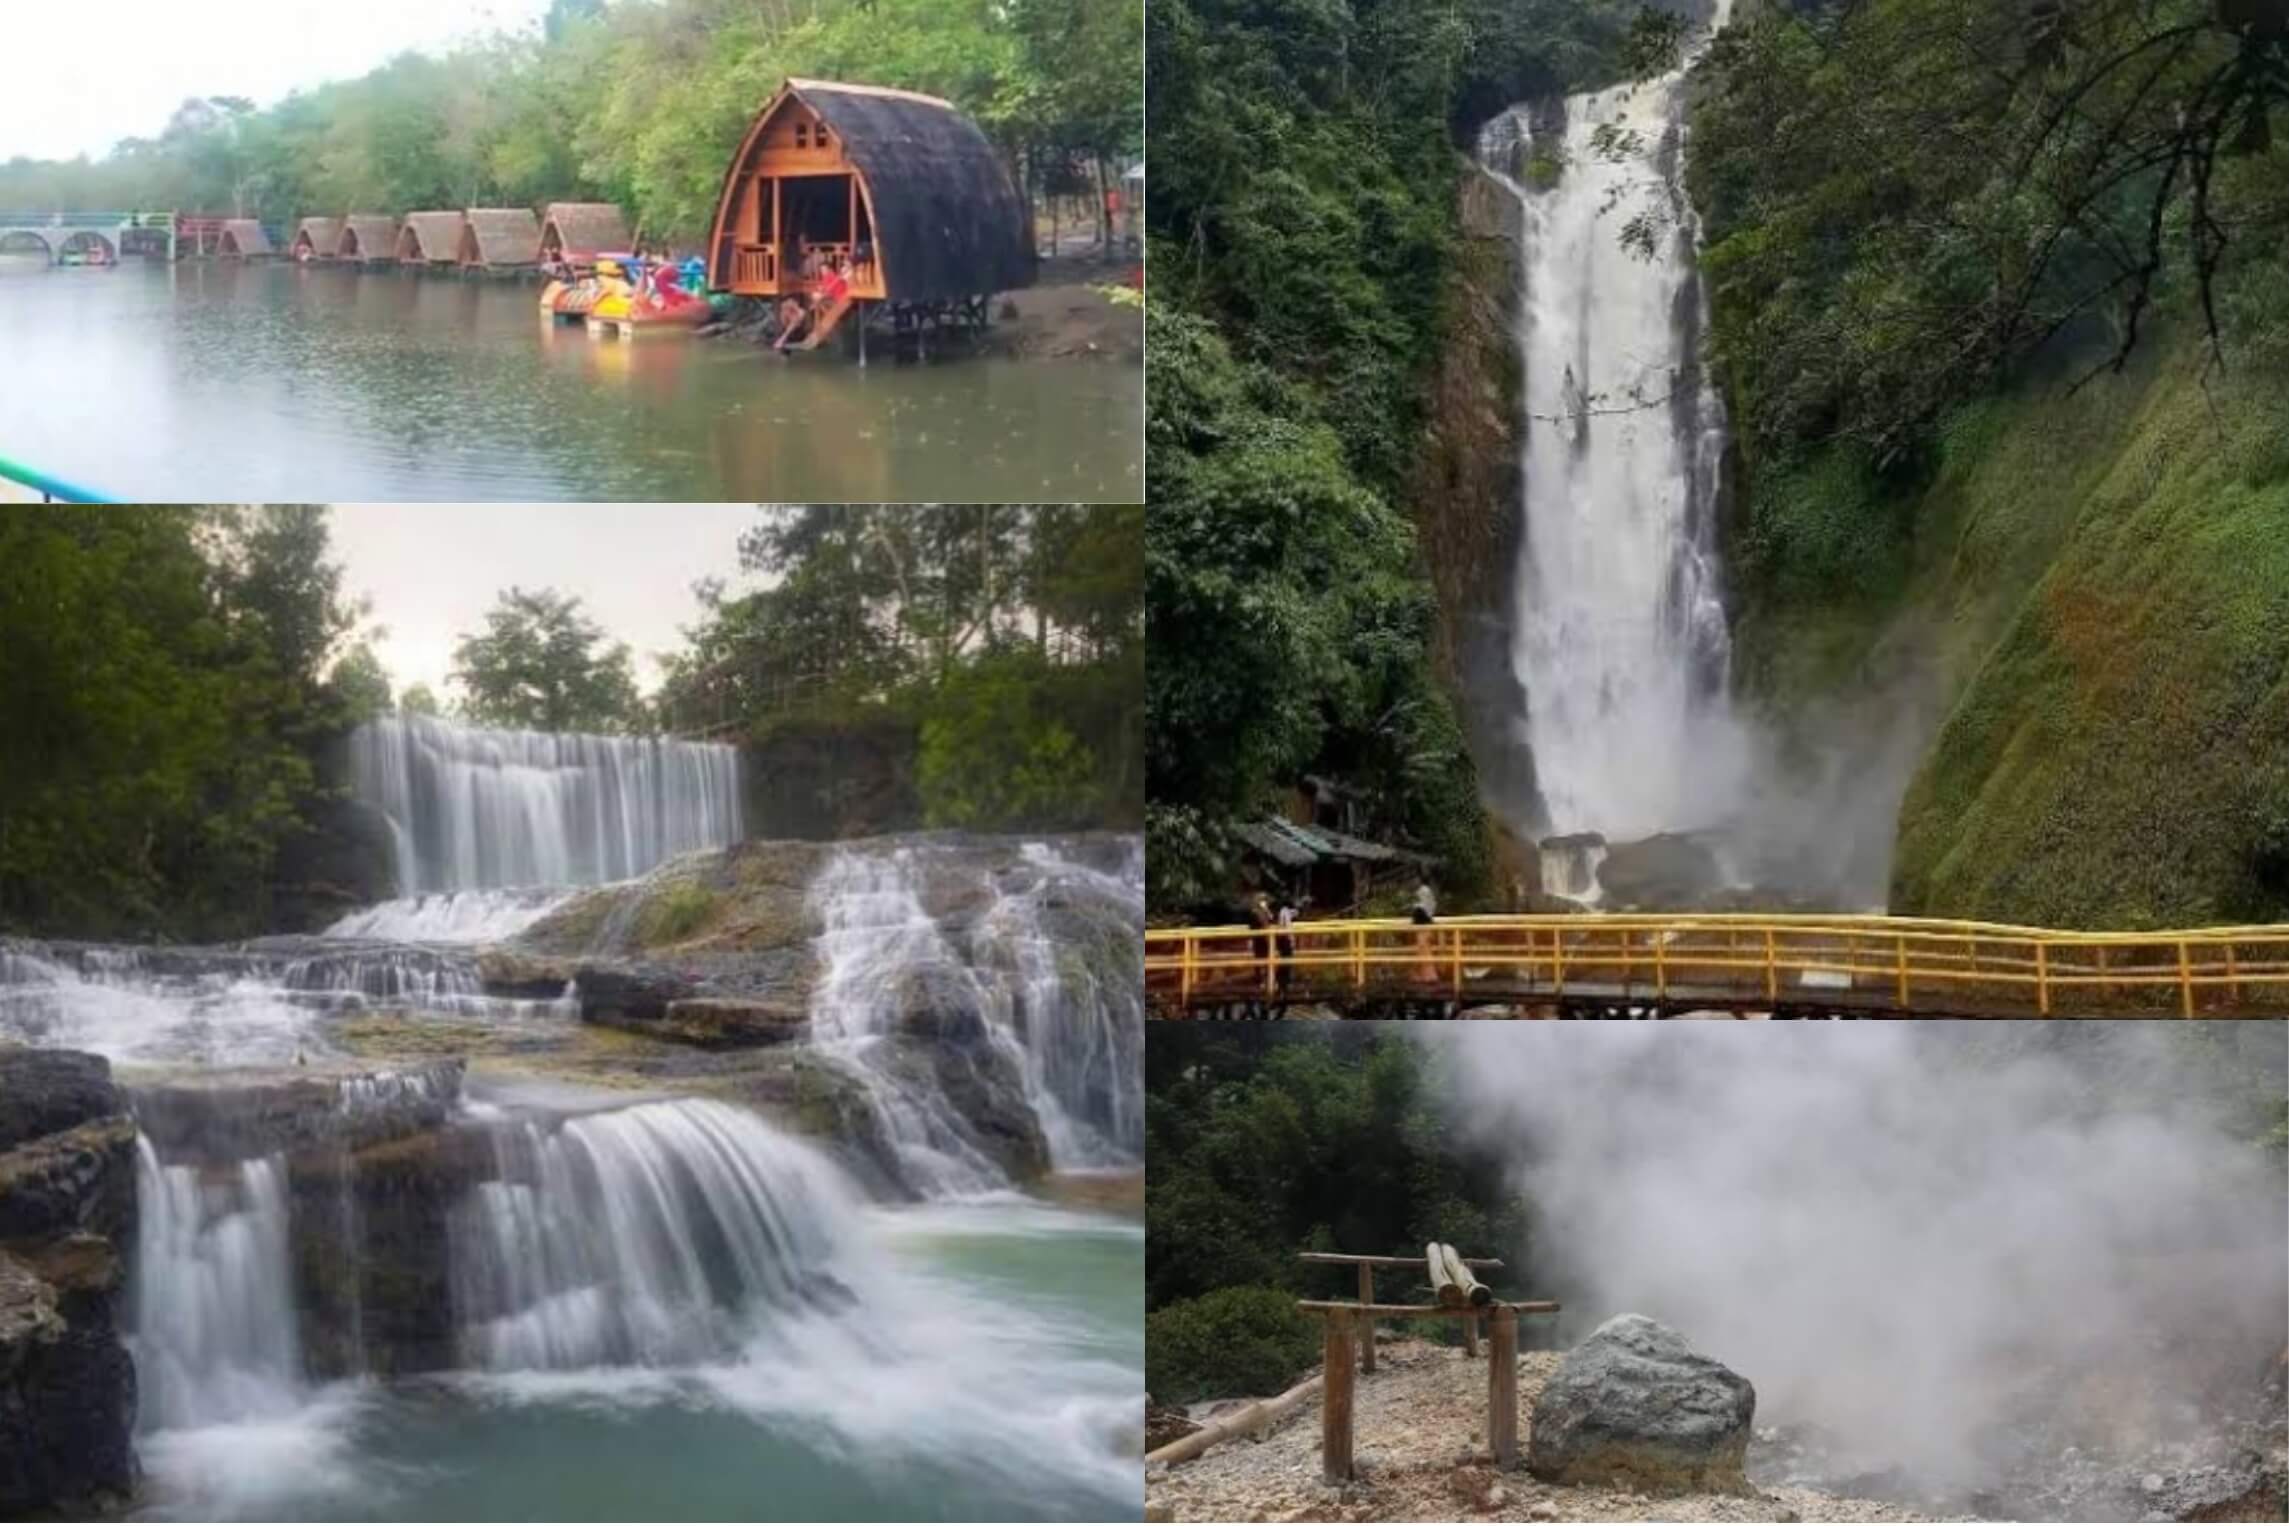 Tahun Baru! Ini 9 Rekomendasi Tempat Wisata di Muara Enim Sumatera Selatan, Salah Satunya Peraih API Award